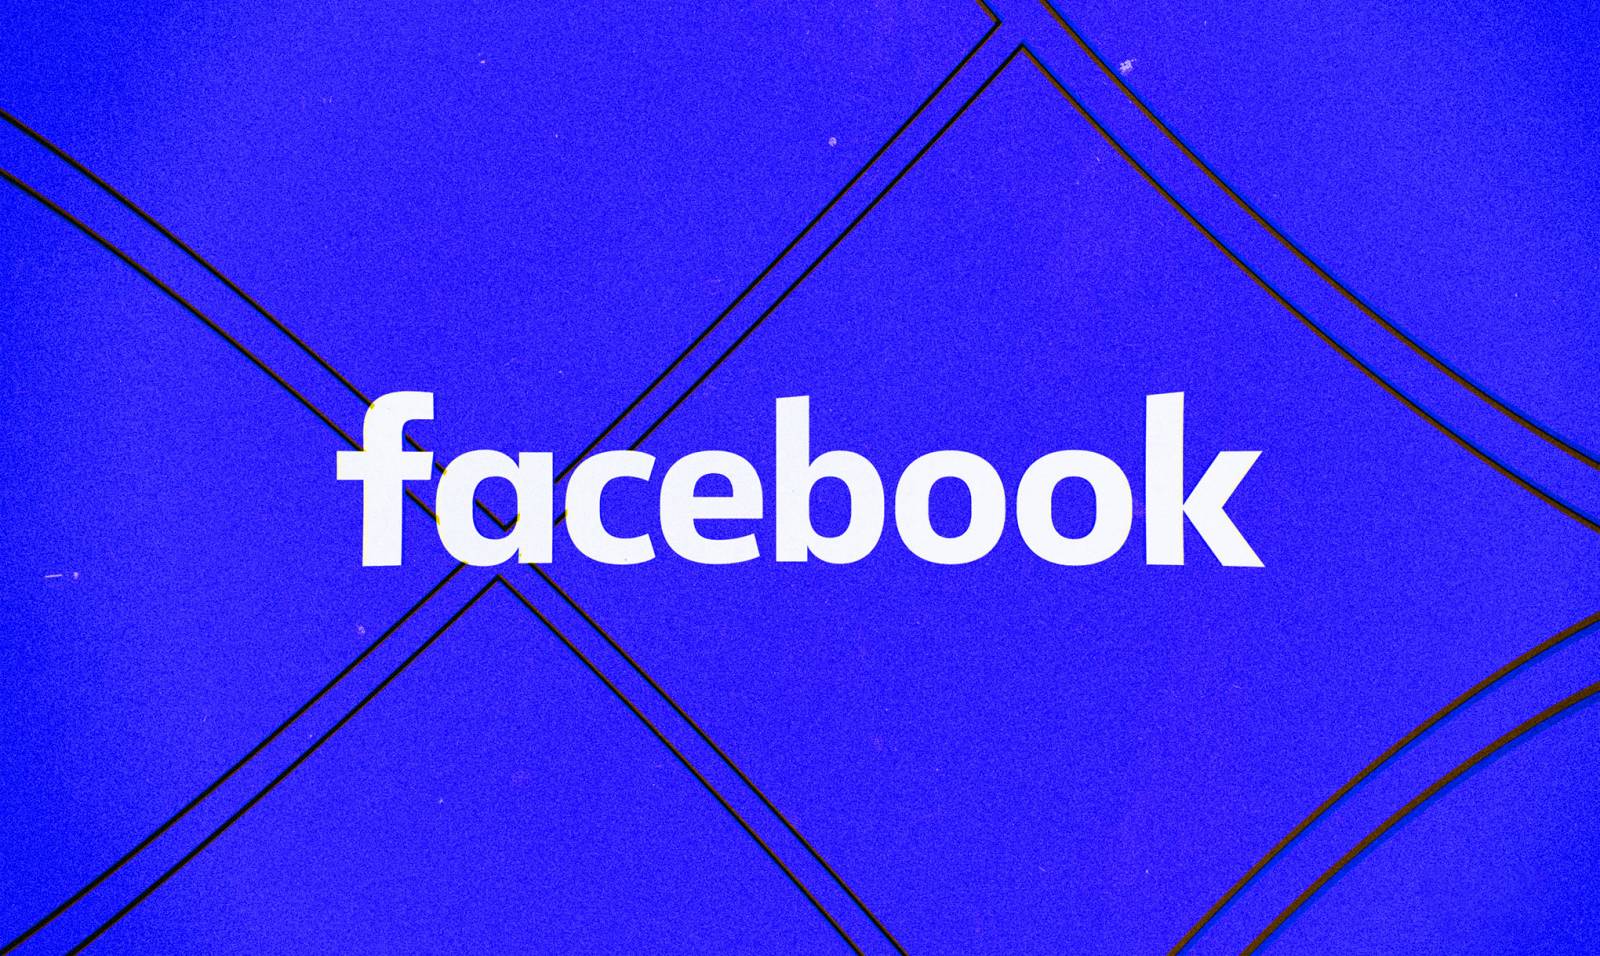 Lanzada la nueva actualización de Facebook, qué cambios se introducen en los teléfonos